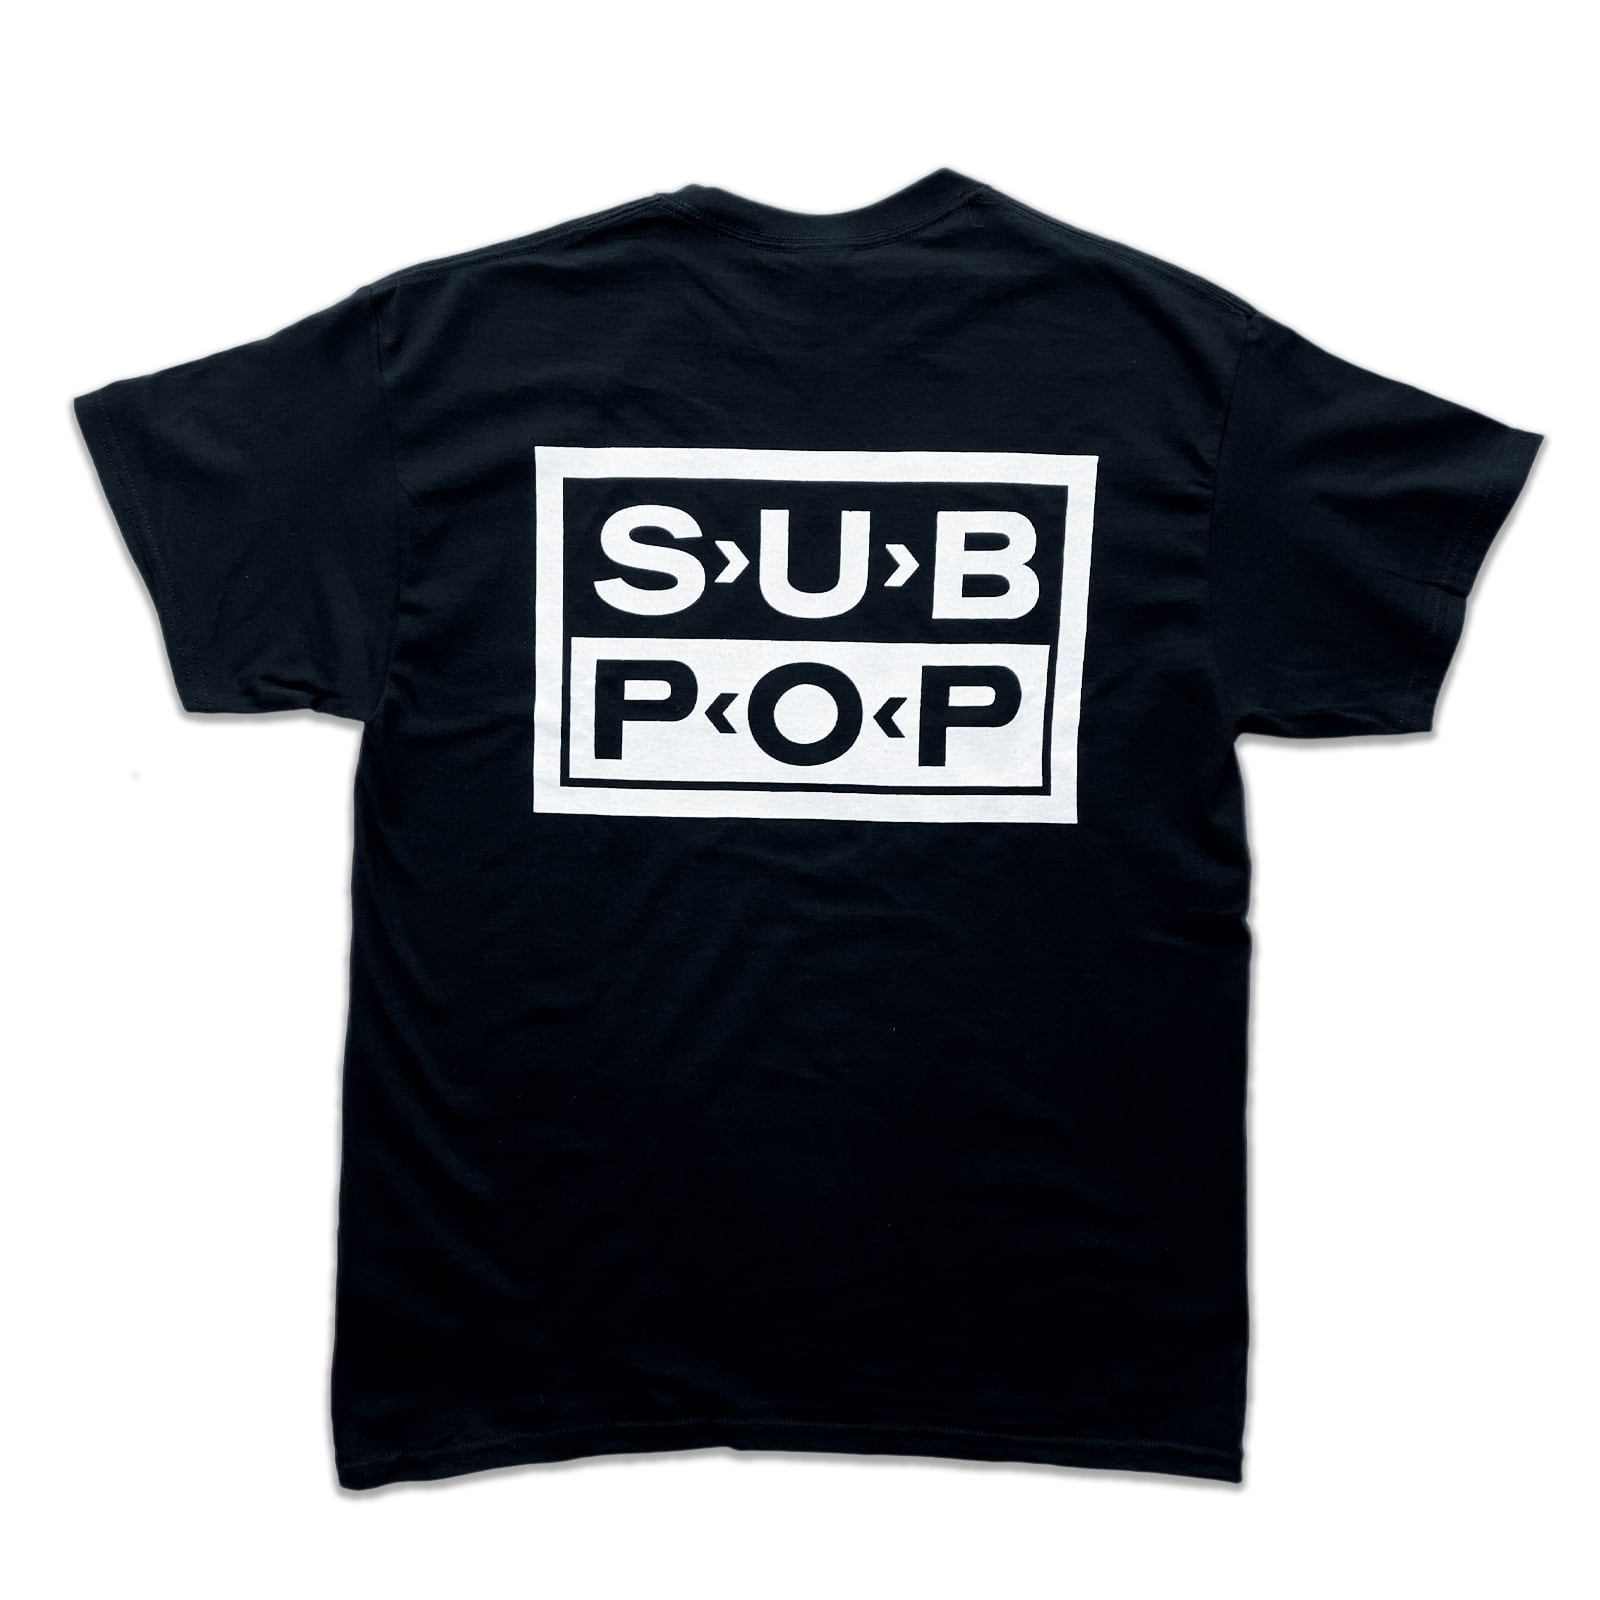 SUB POP サブポップ Tシャツ